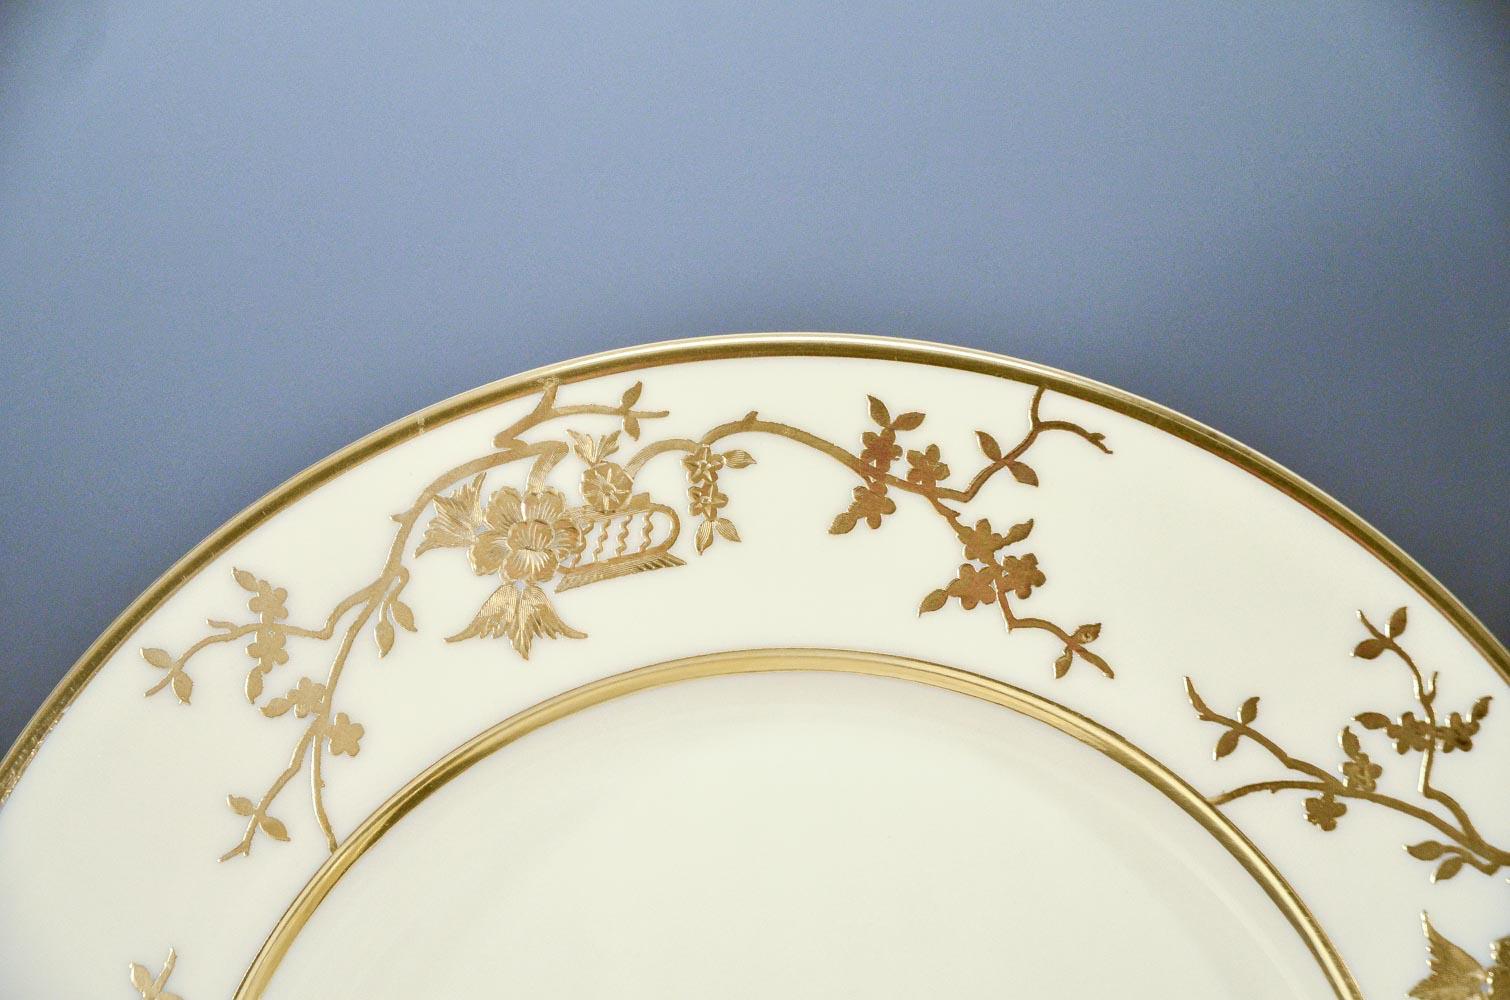 Dieses wunderbare Service für 12 Personen wurde von der Ceramic Art Company/Lenox um 1890 hergestellt und besteht aus Sterlingsilber mit einer Goldauflage in einem ikonischen 